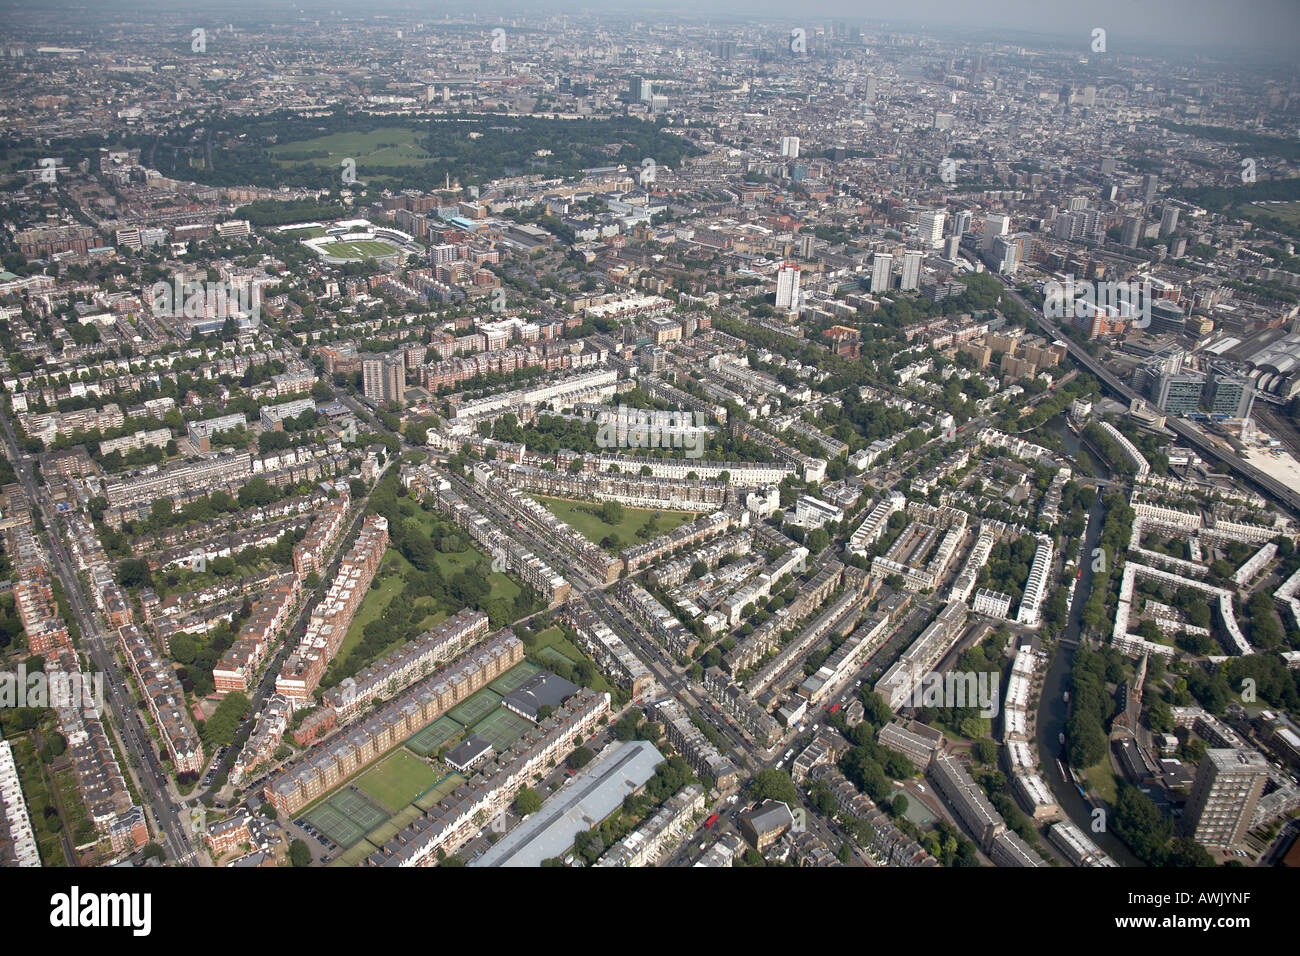 Vue aérienne oblique de haut niveau au nord-est du terrain de cricket de Lord's Marylebone Cricket Club de Tennis zone résidentielle Banque D'Images